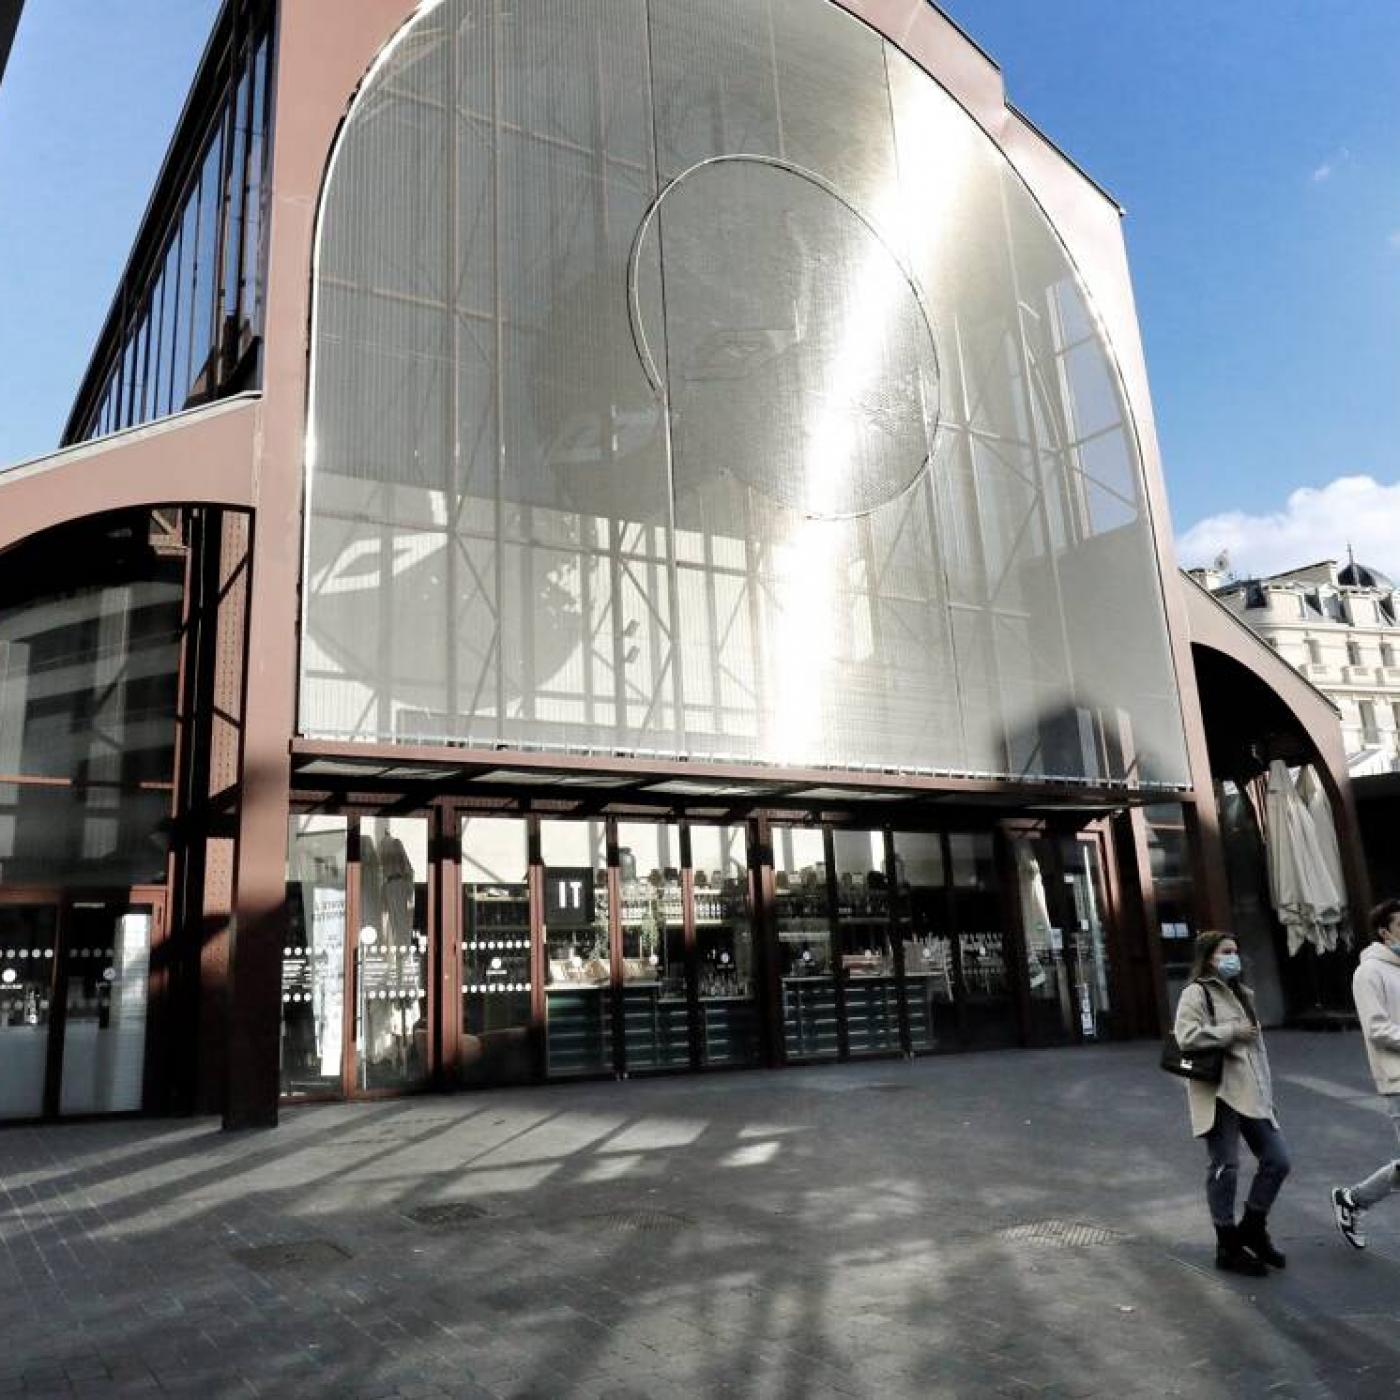 Demain la mairie de Nice va dévoilé le projet de reprise concernant la gare du Sud